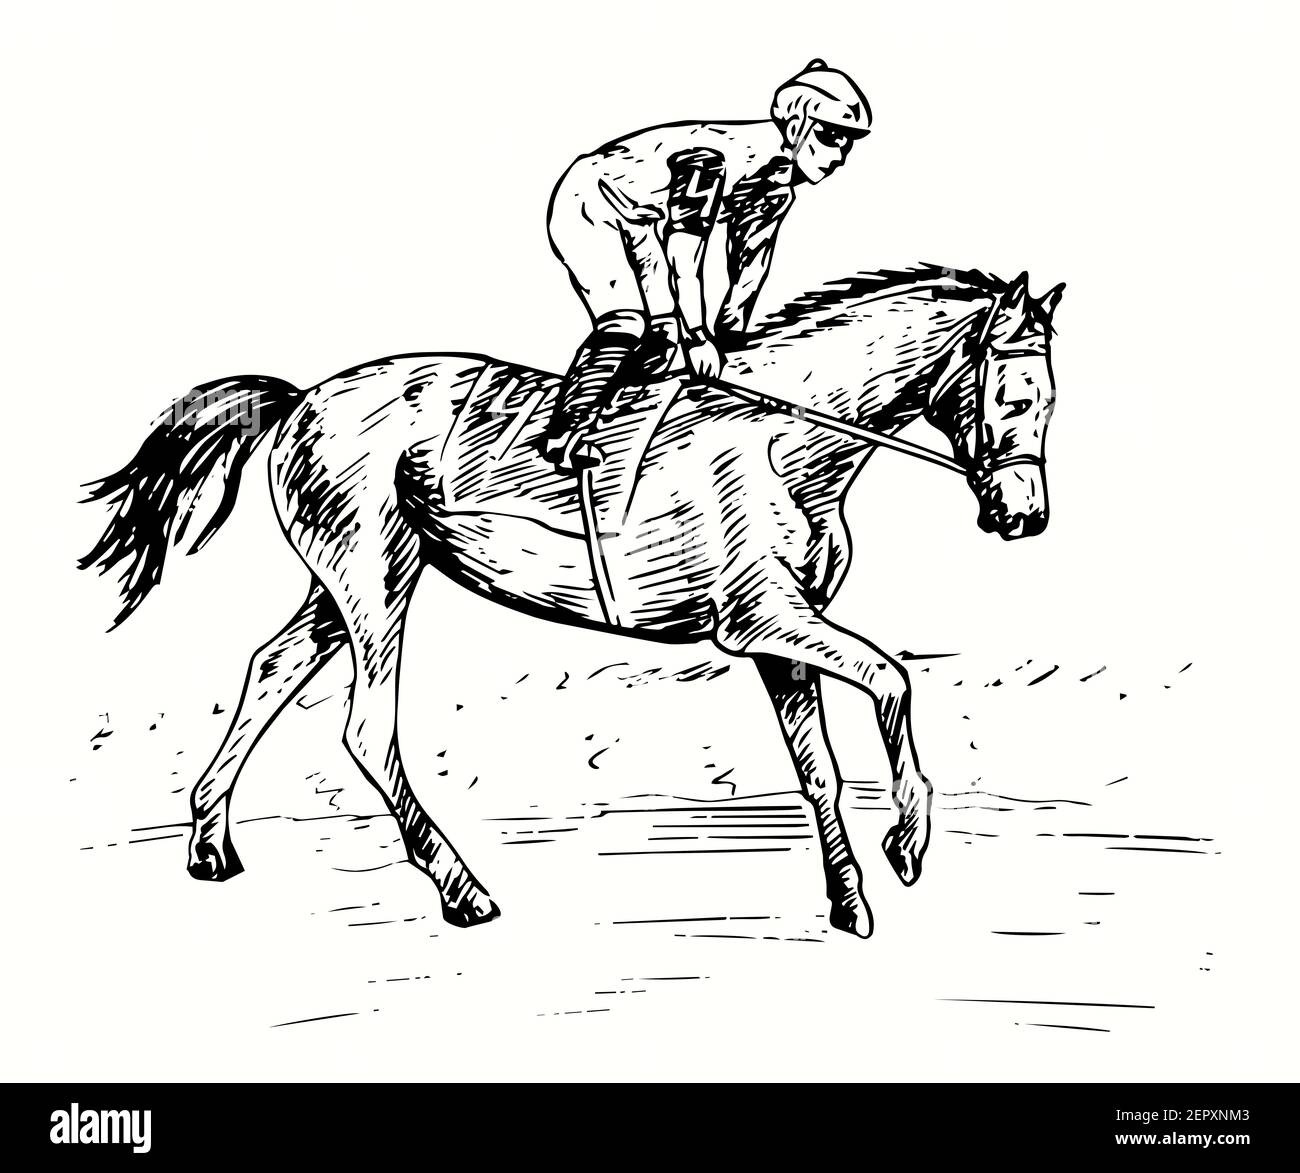 Handgezeichneter Profisportler Jockey auf dem Pferderücken Teilnahme an Rennen auf der Rennstrecke. Tinte schwarz-weiß Zeichnung. Stockfoto